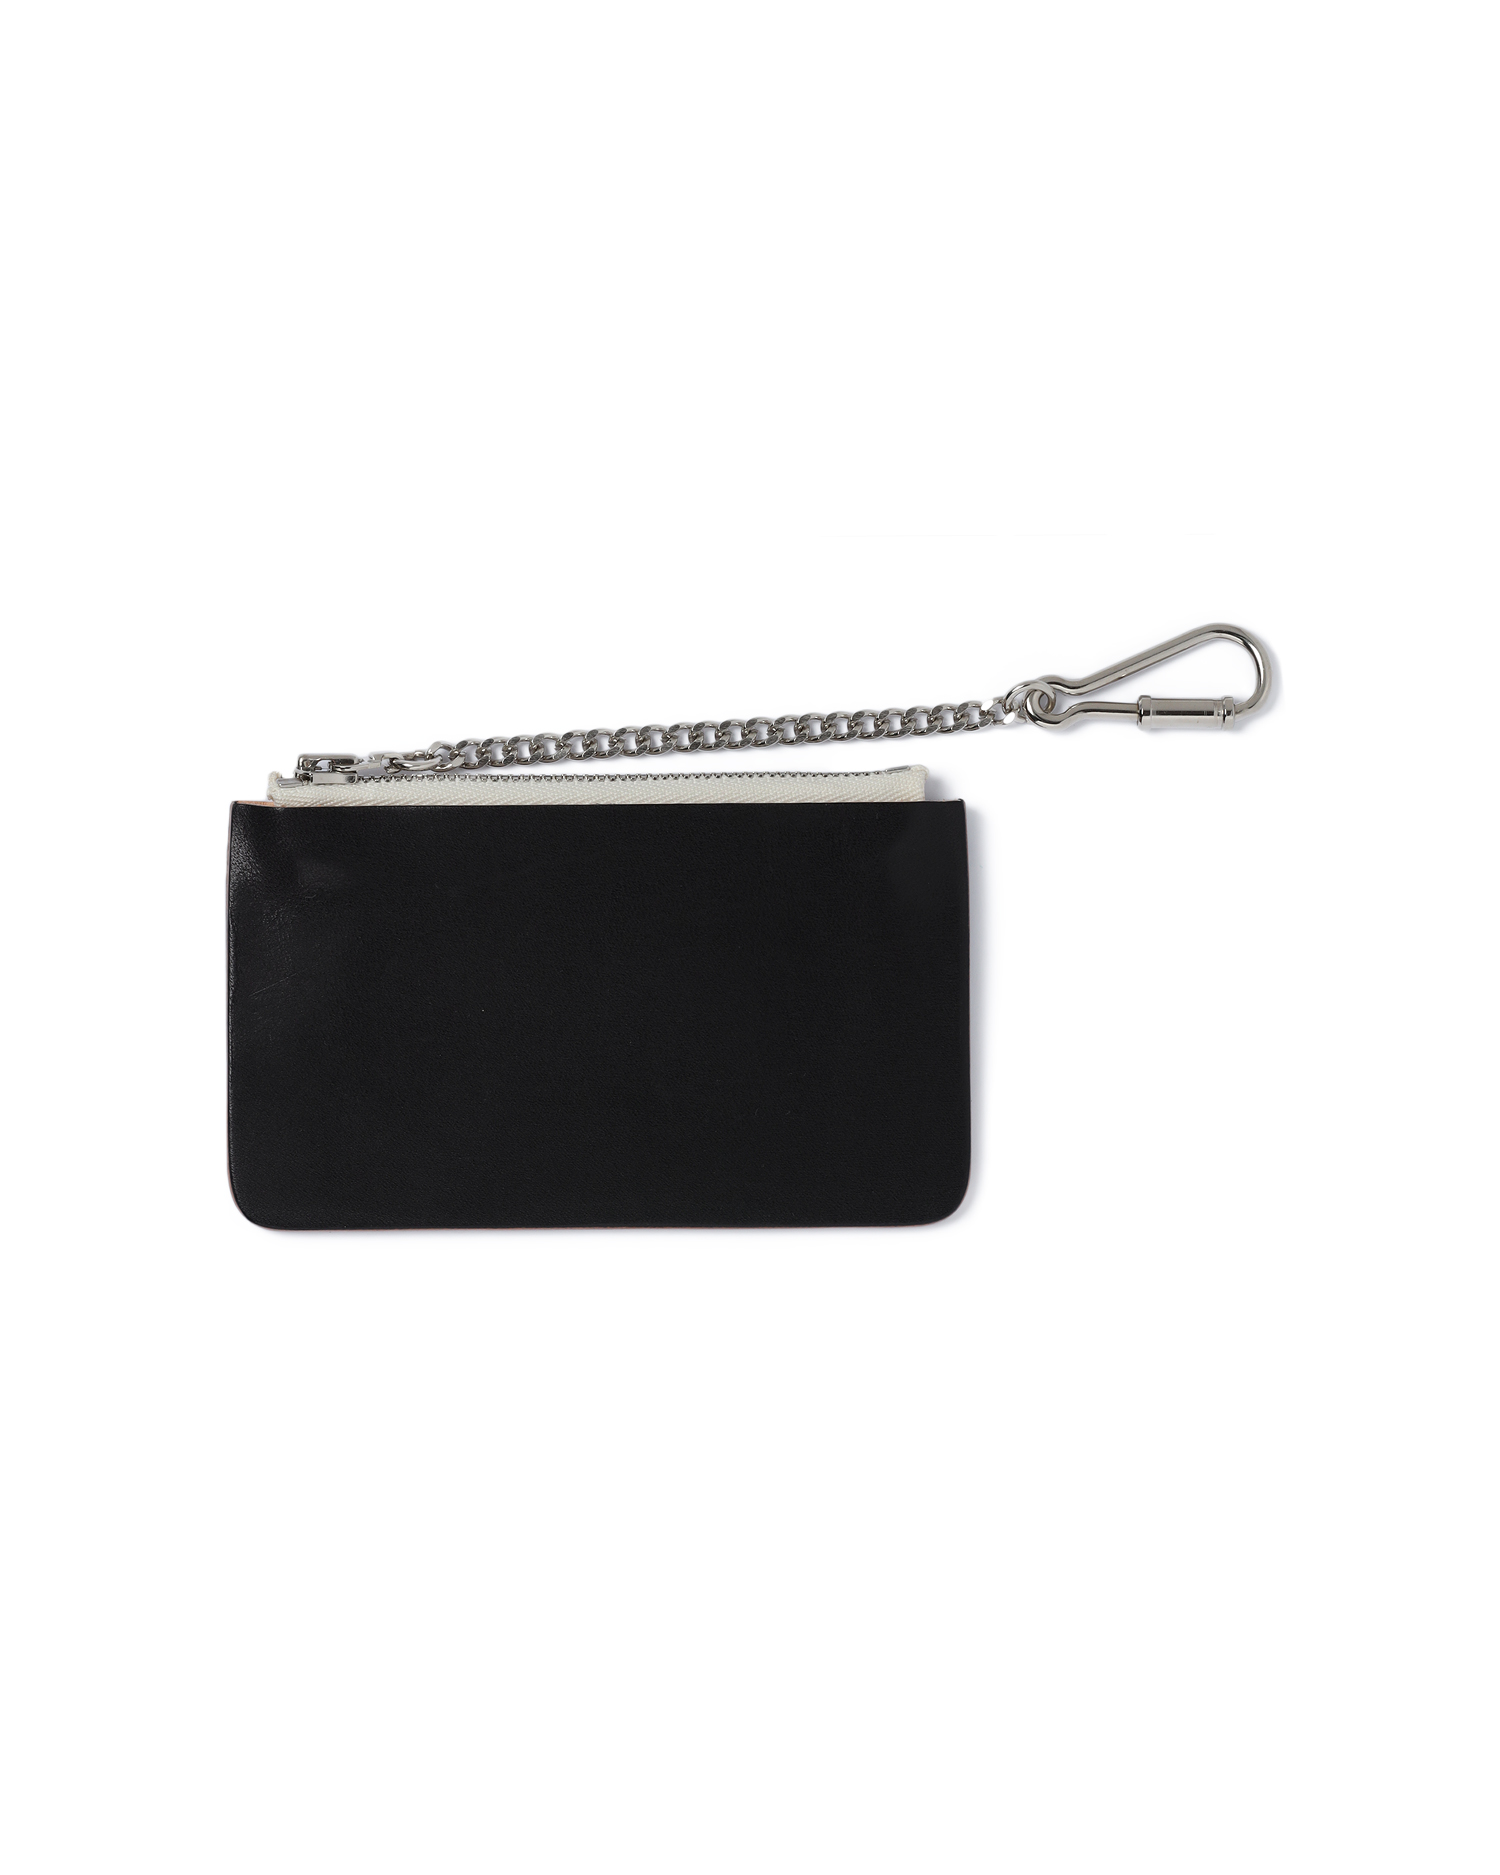 HENDER SCHEME Seamless chain purse| ITeSHOP